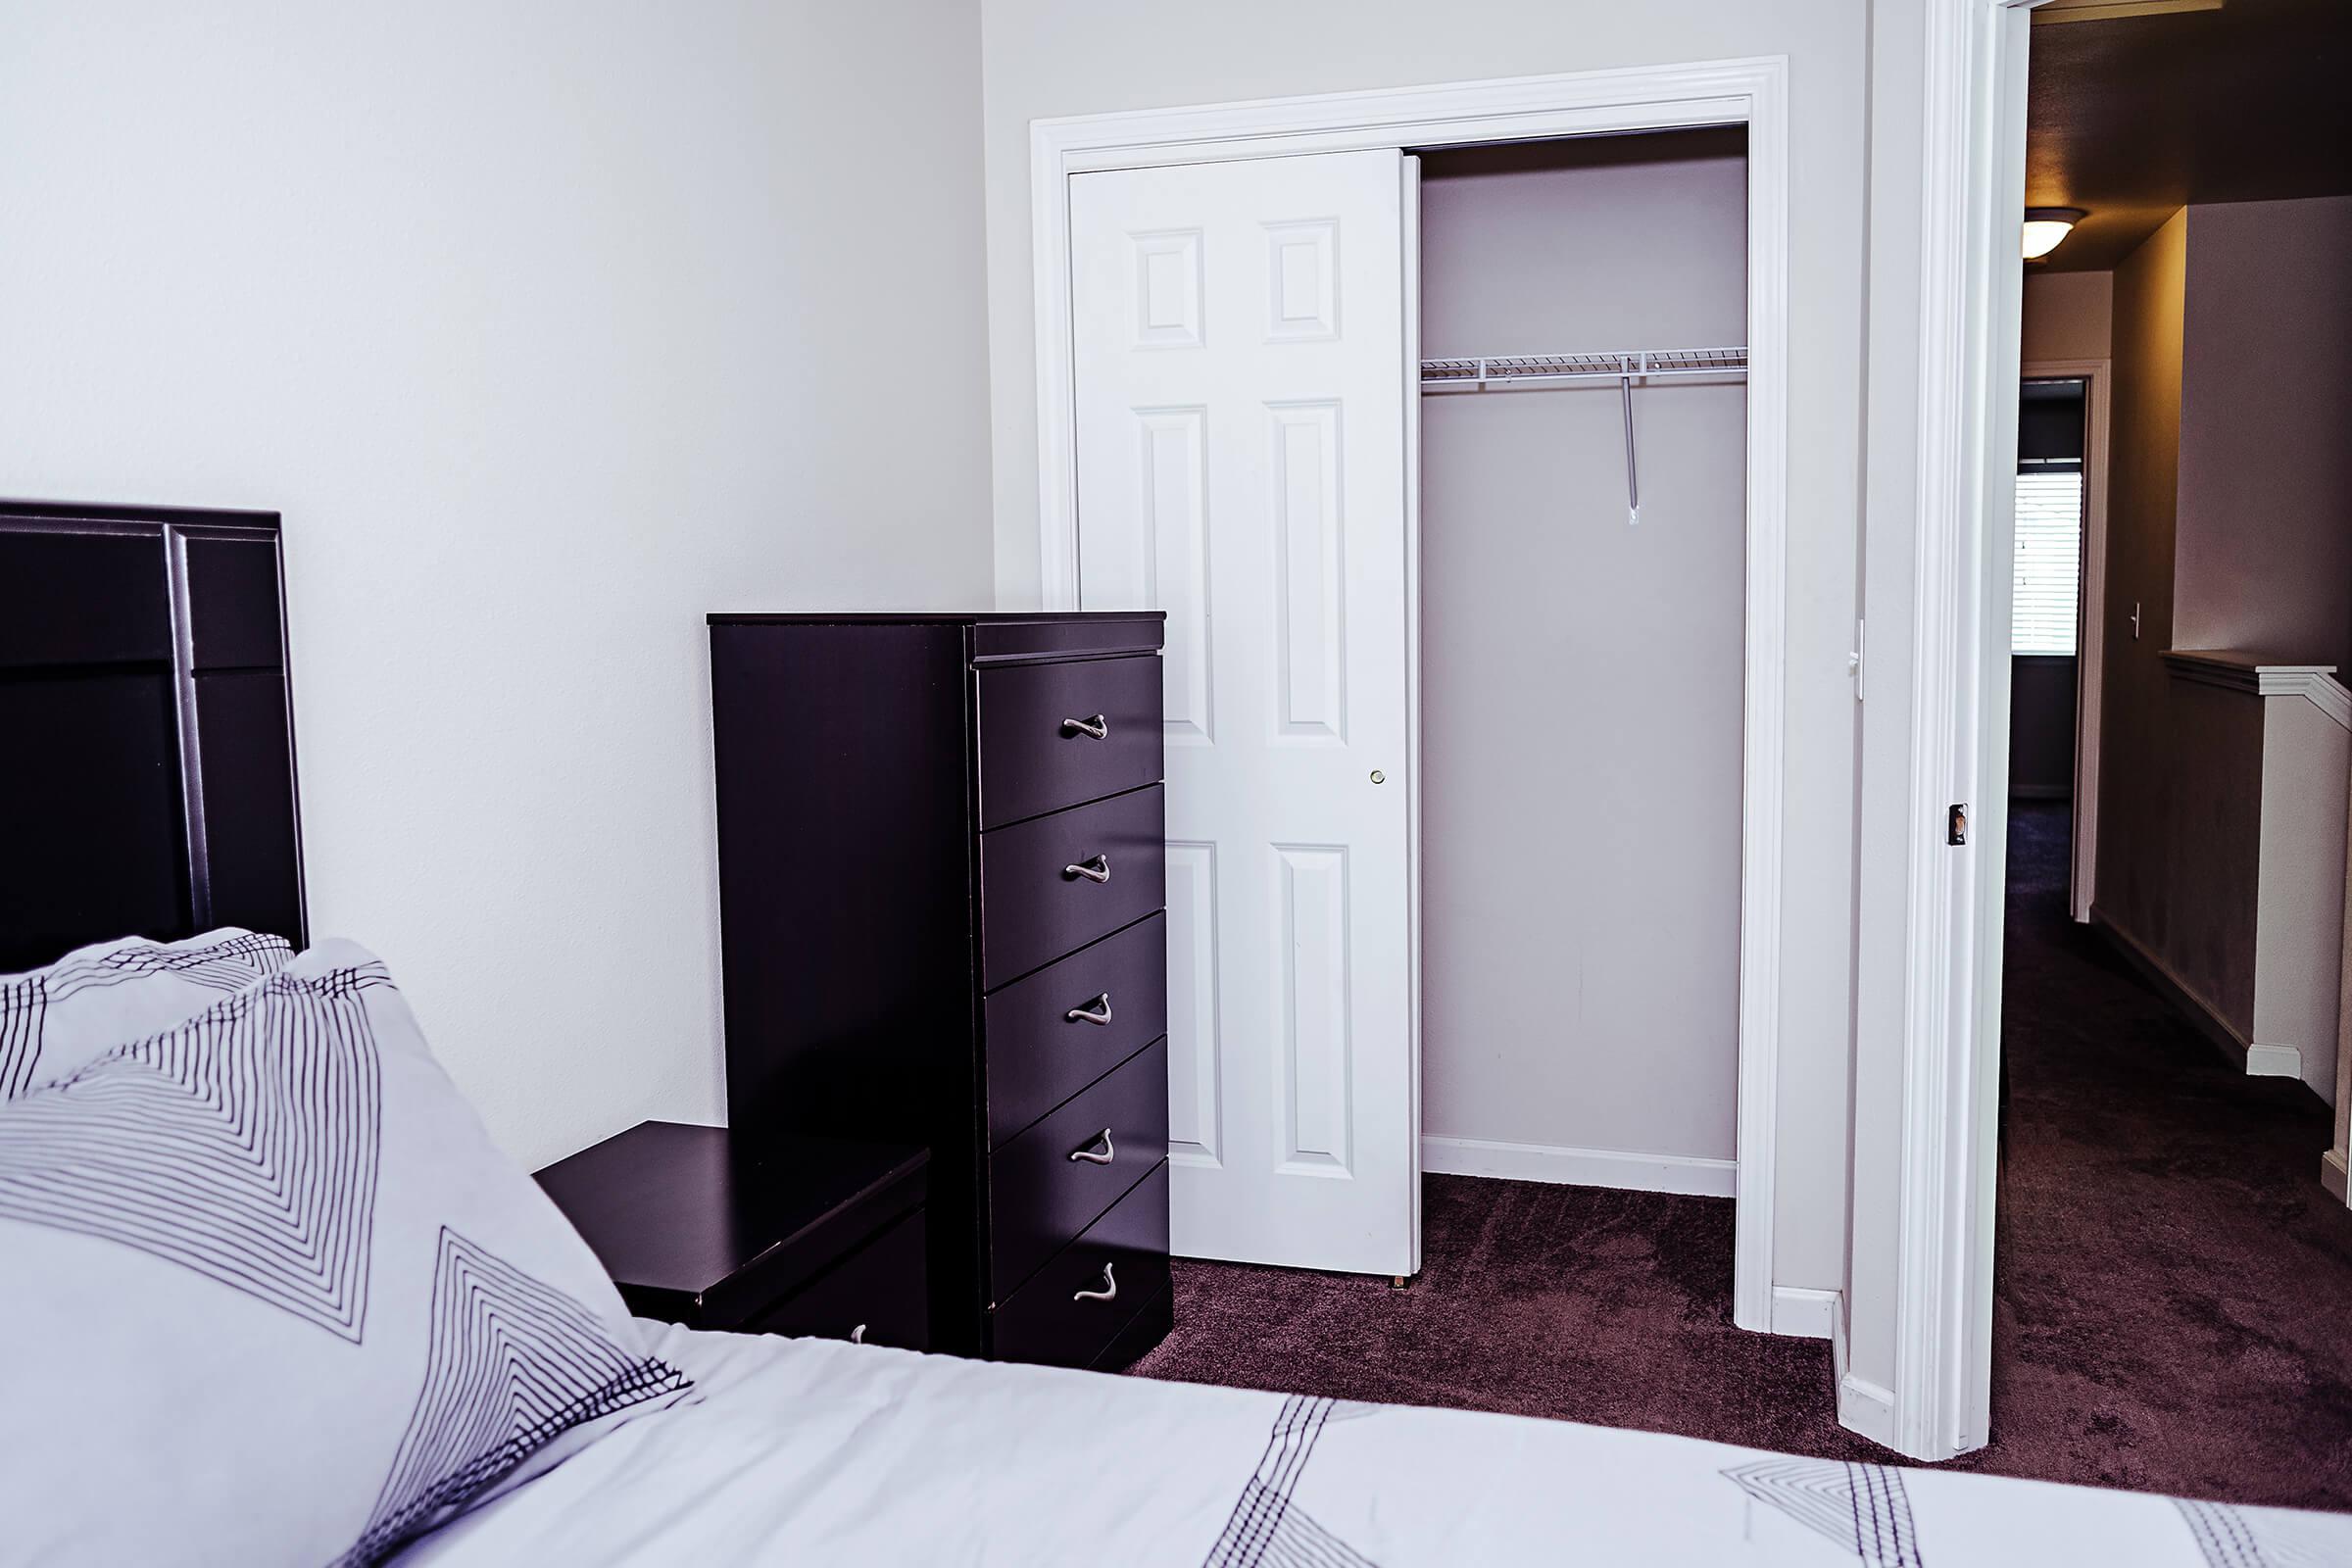 Bedroom with an open closet door